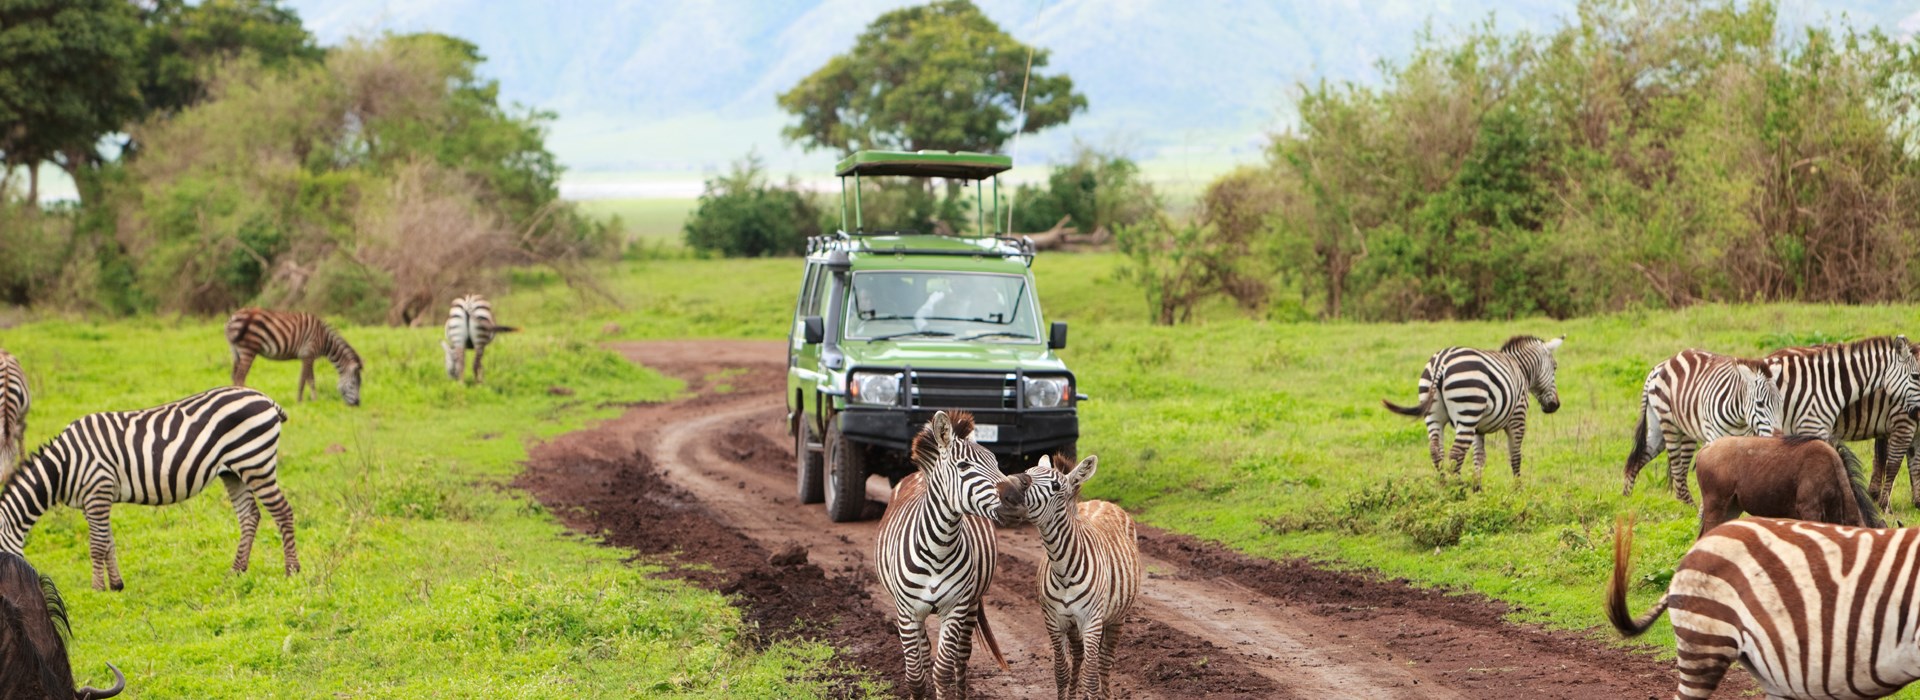 safari tanzanie famille